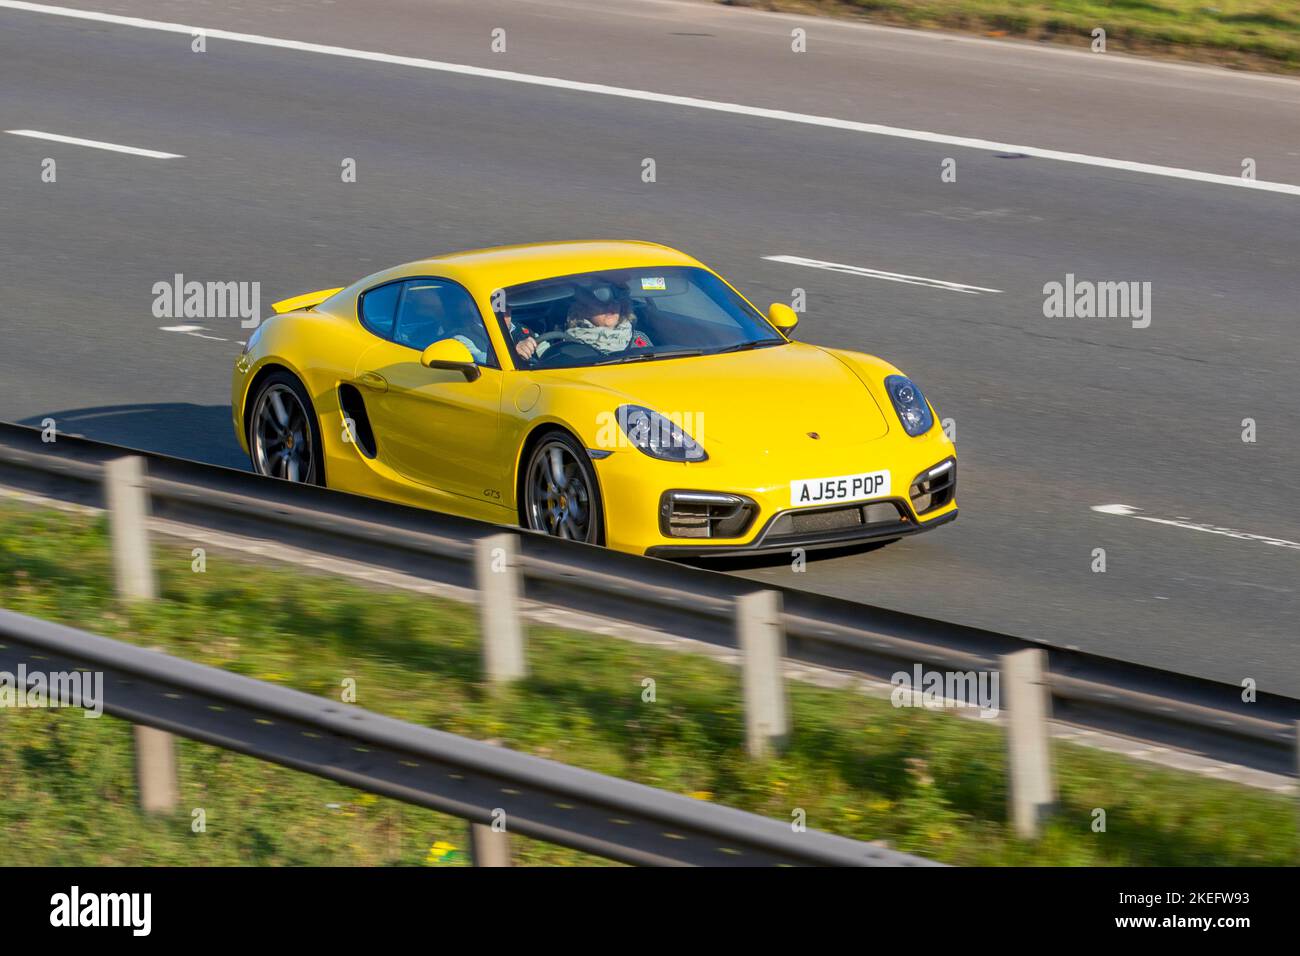 2016 giallo PORSCHE CAYMAN GTS RDK 3436cc PDK Auto benzina coupé 7 Speed Automatic, viaggiando sull'autostrada M6, Regno Unito Foto Stock